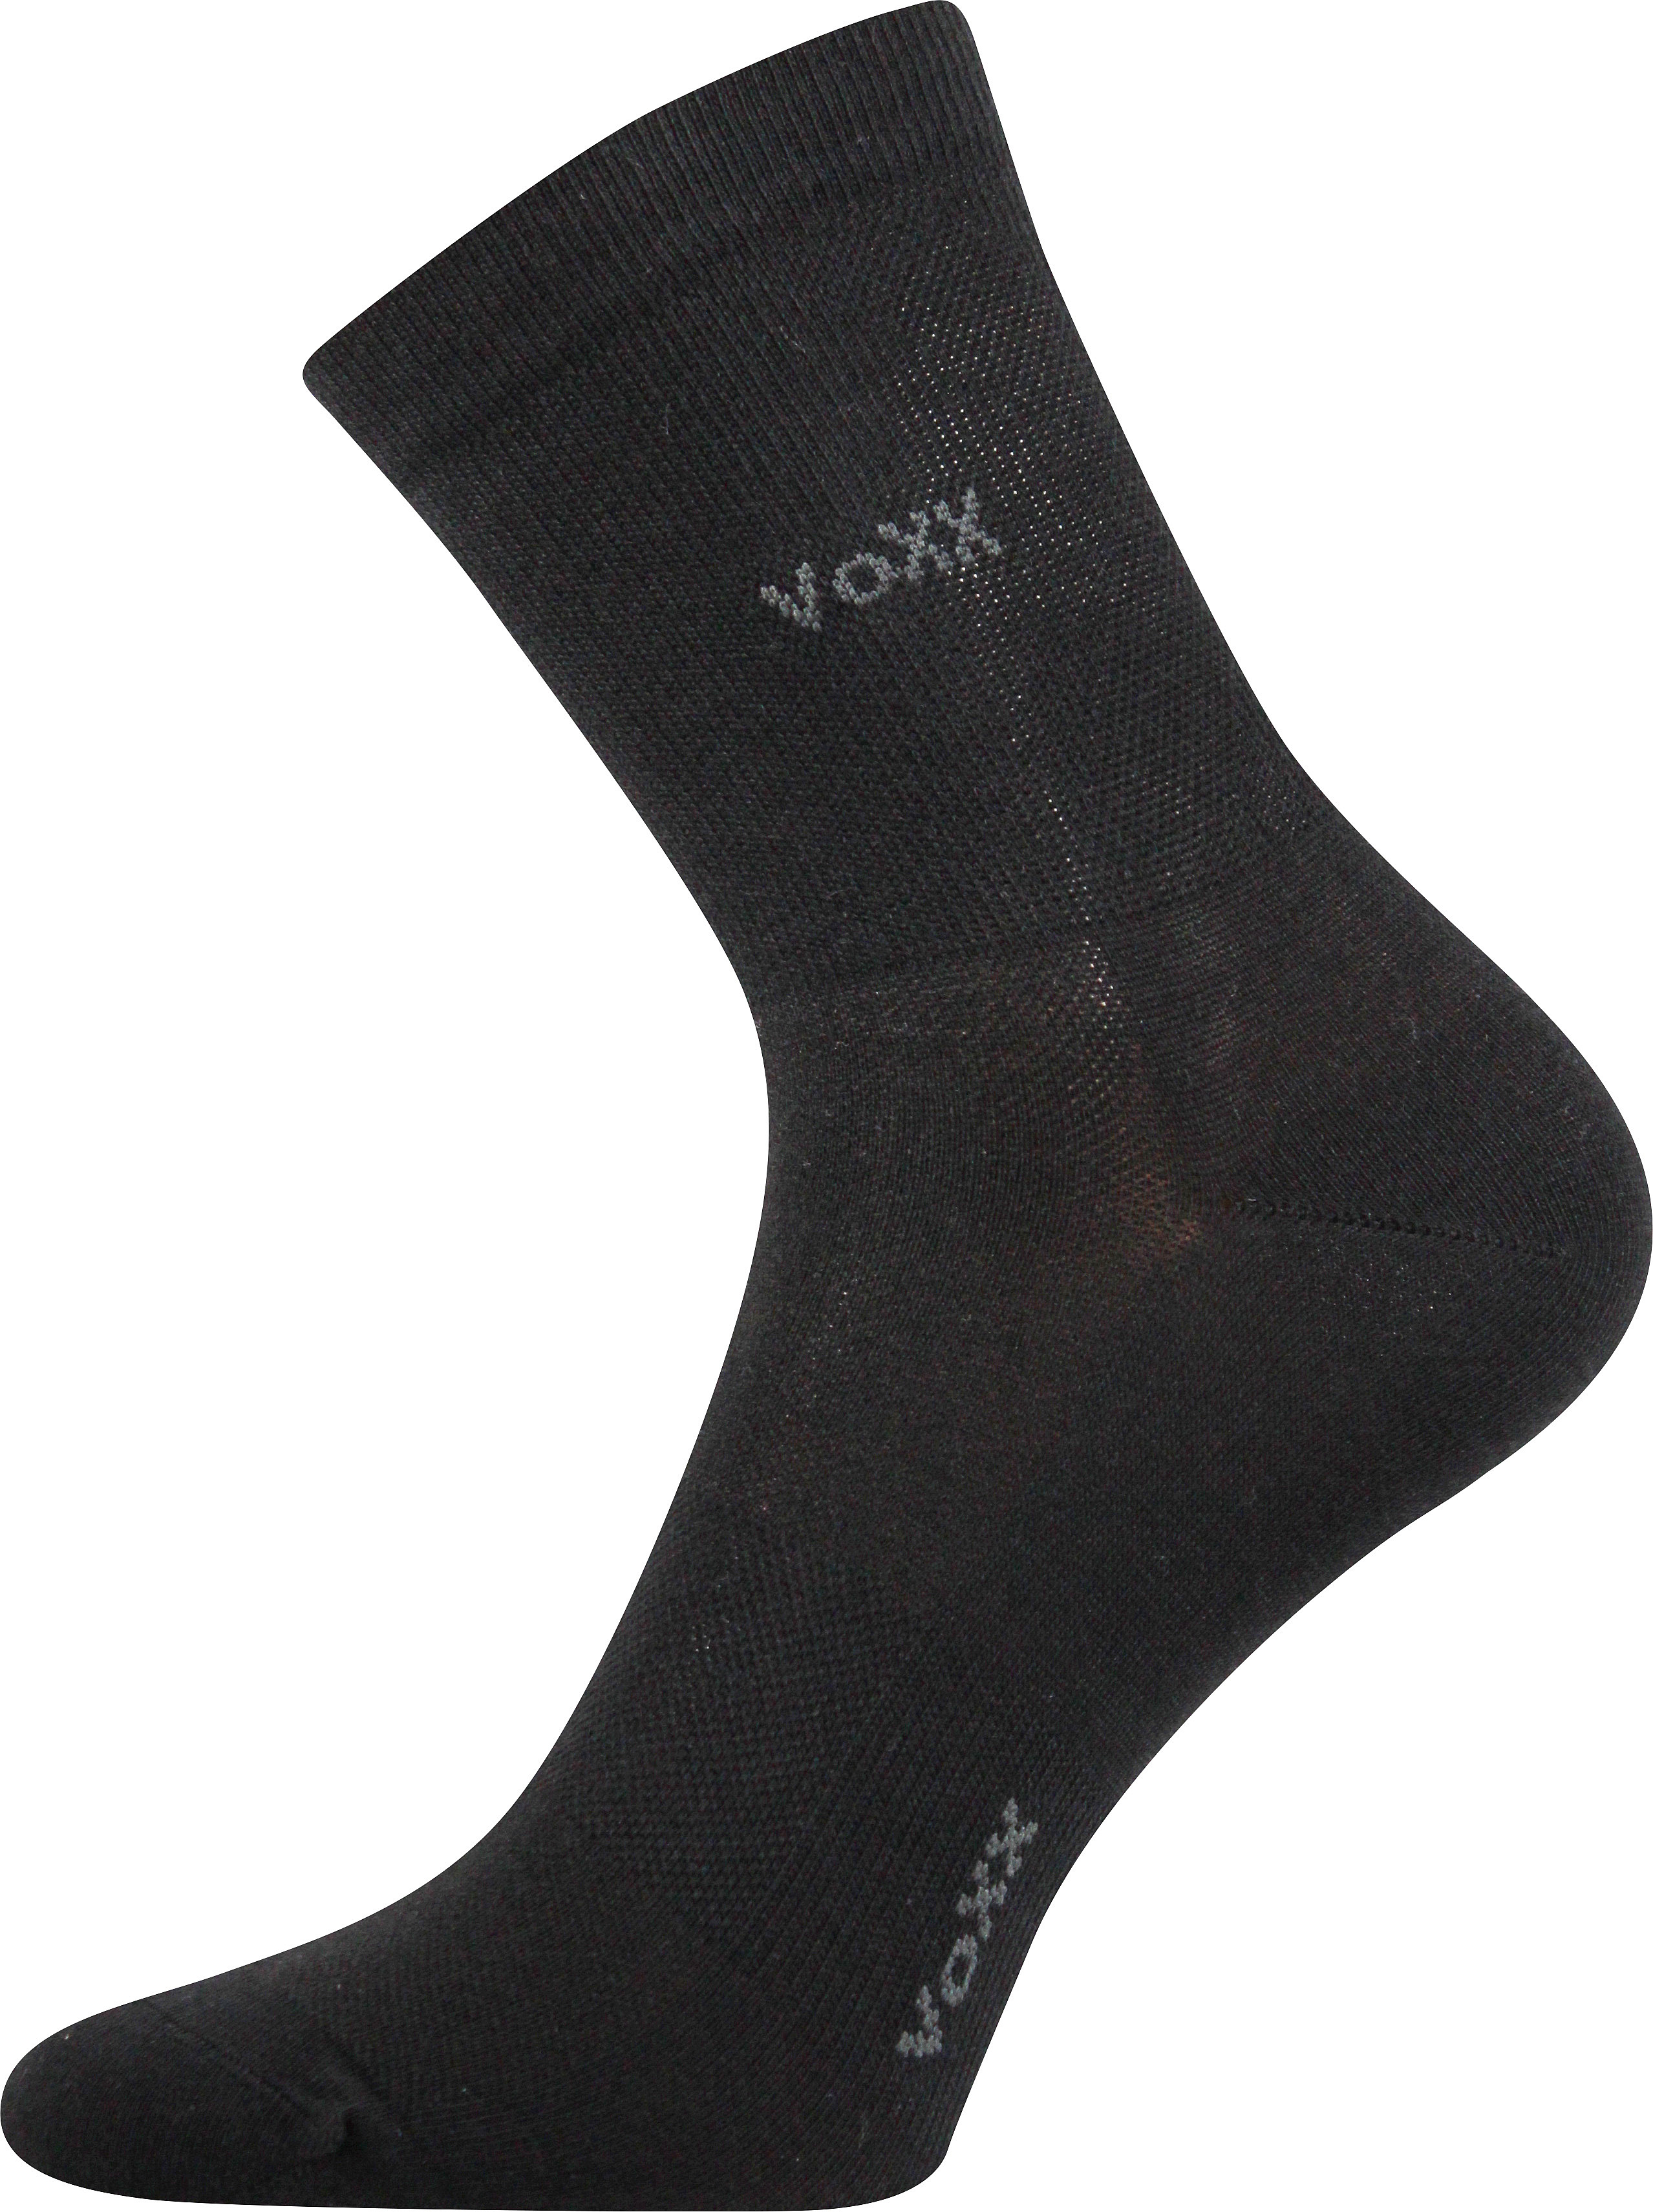 Ponožky sportovní Voxx Horizon - černé, 43-46